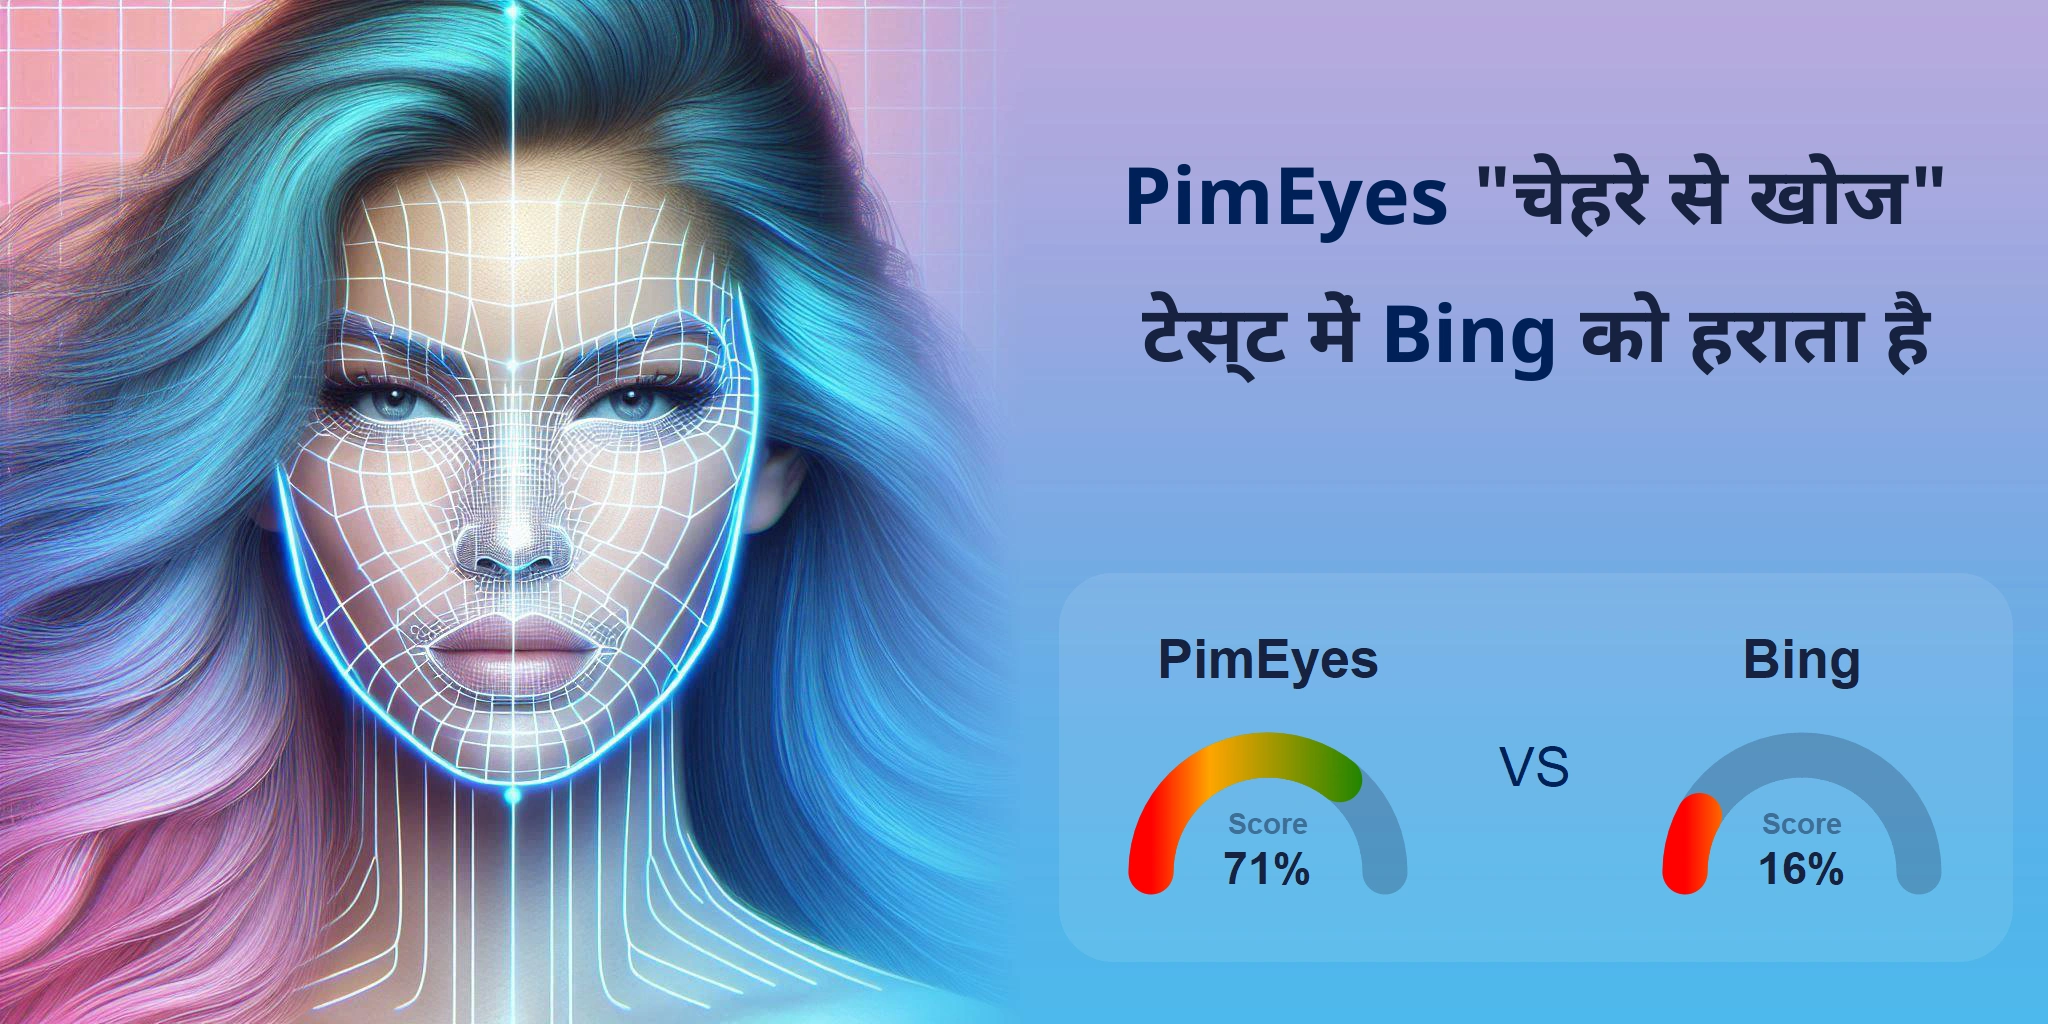 चेहरे की खोज के लिए कौन बेहतर है: <br>PimEyes या Bing?